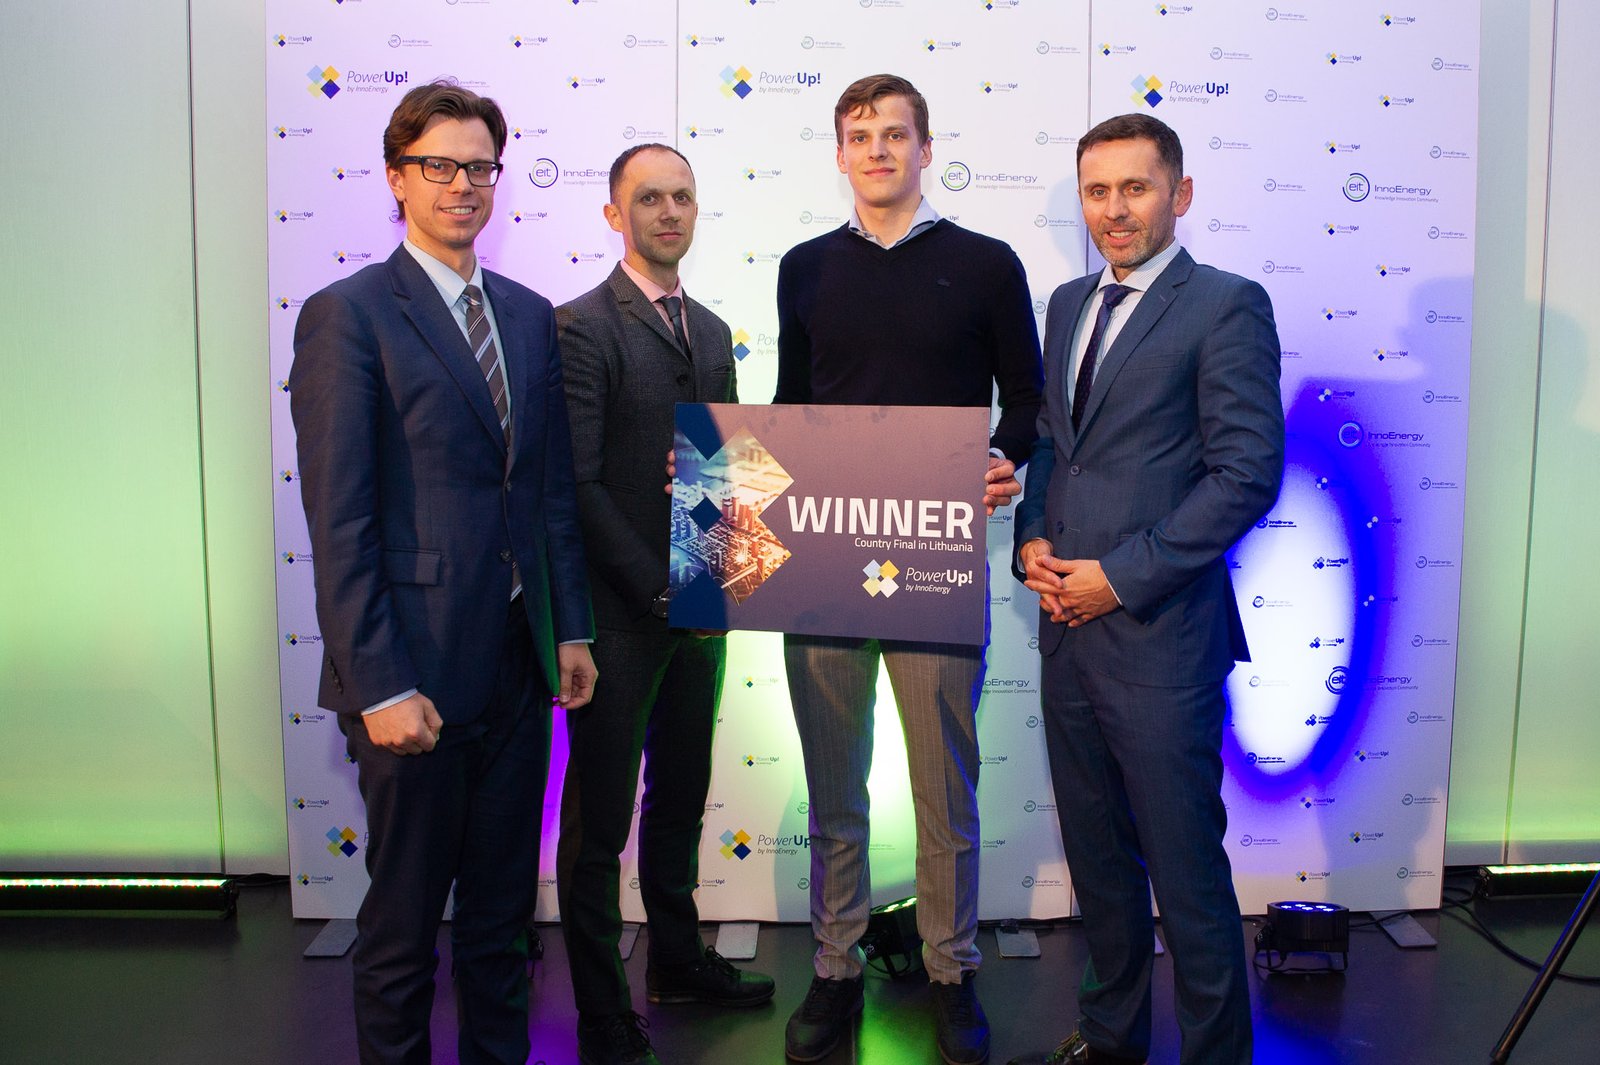 Išrinktas tvariosios energetikos konkurso PowerUp! nugalėtojas Lietuvoje